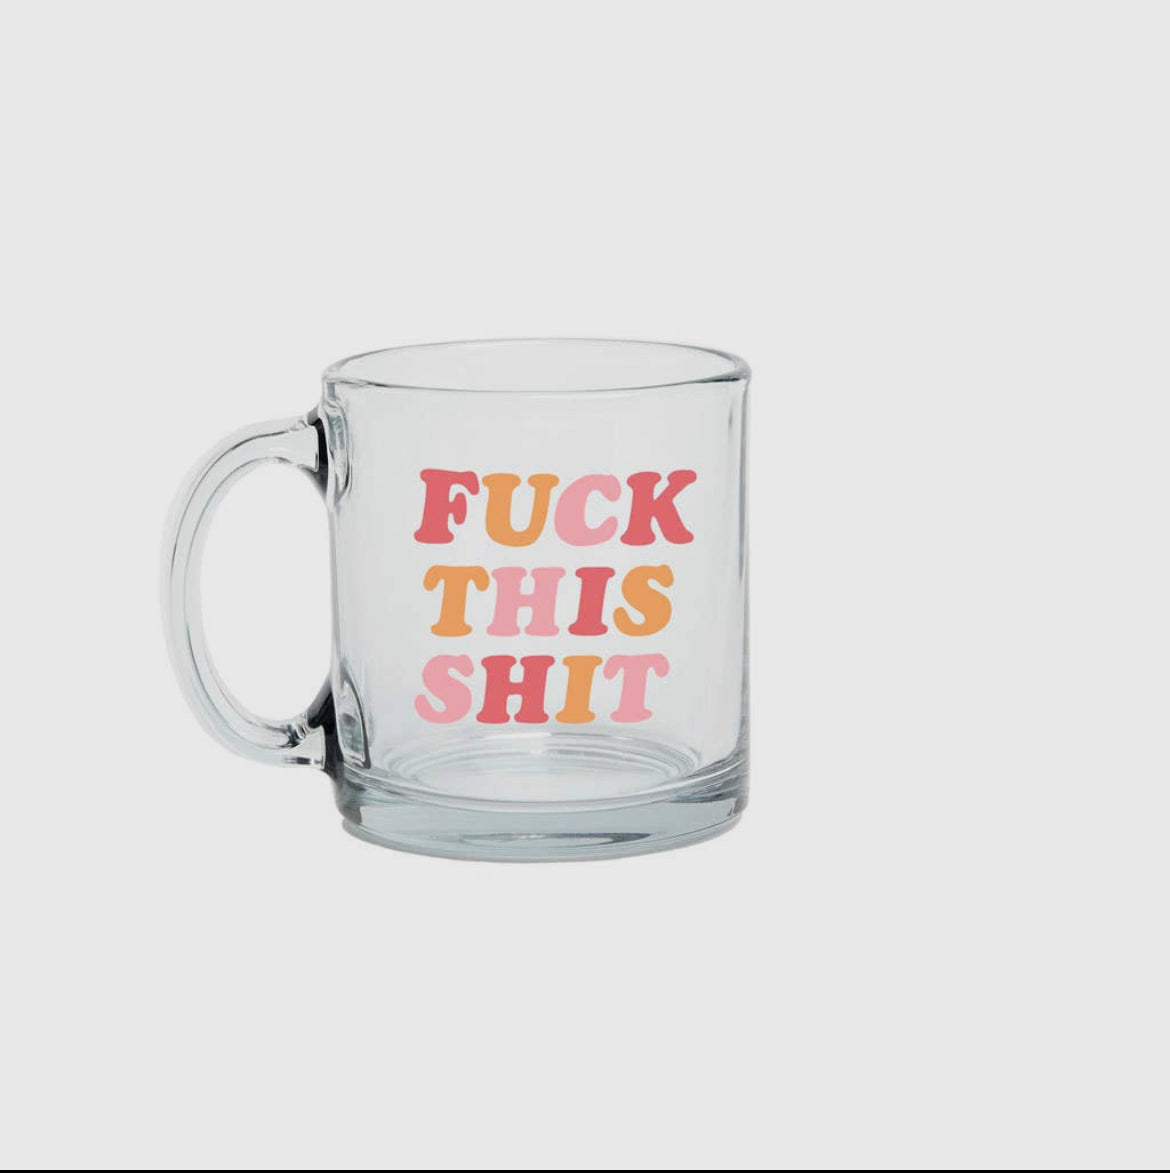 Fuck this shit glass mug gift